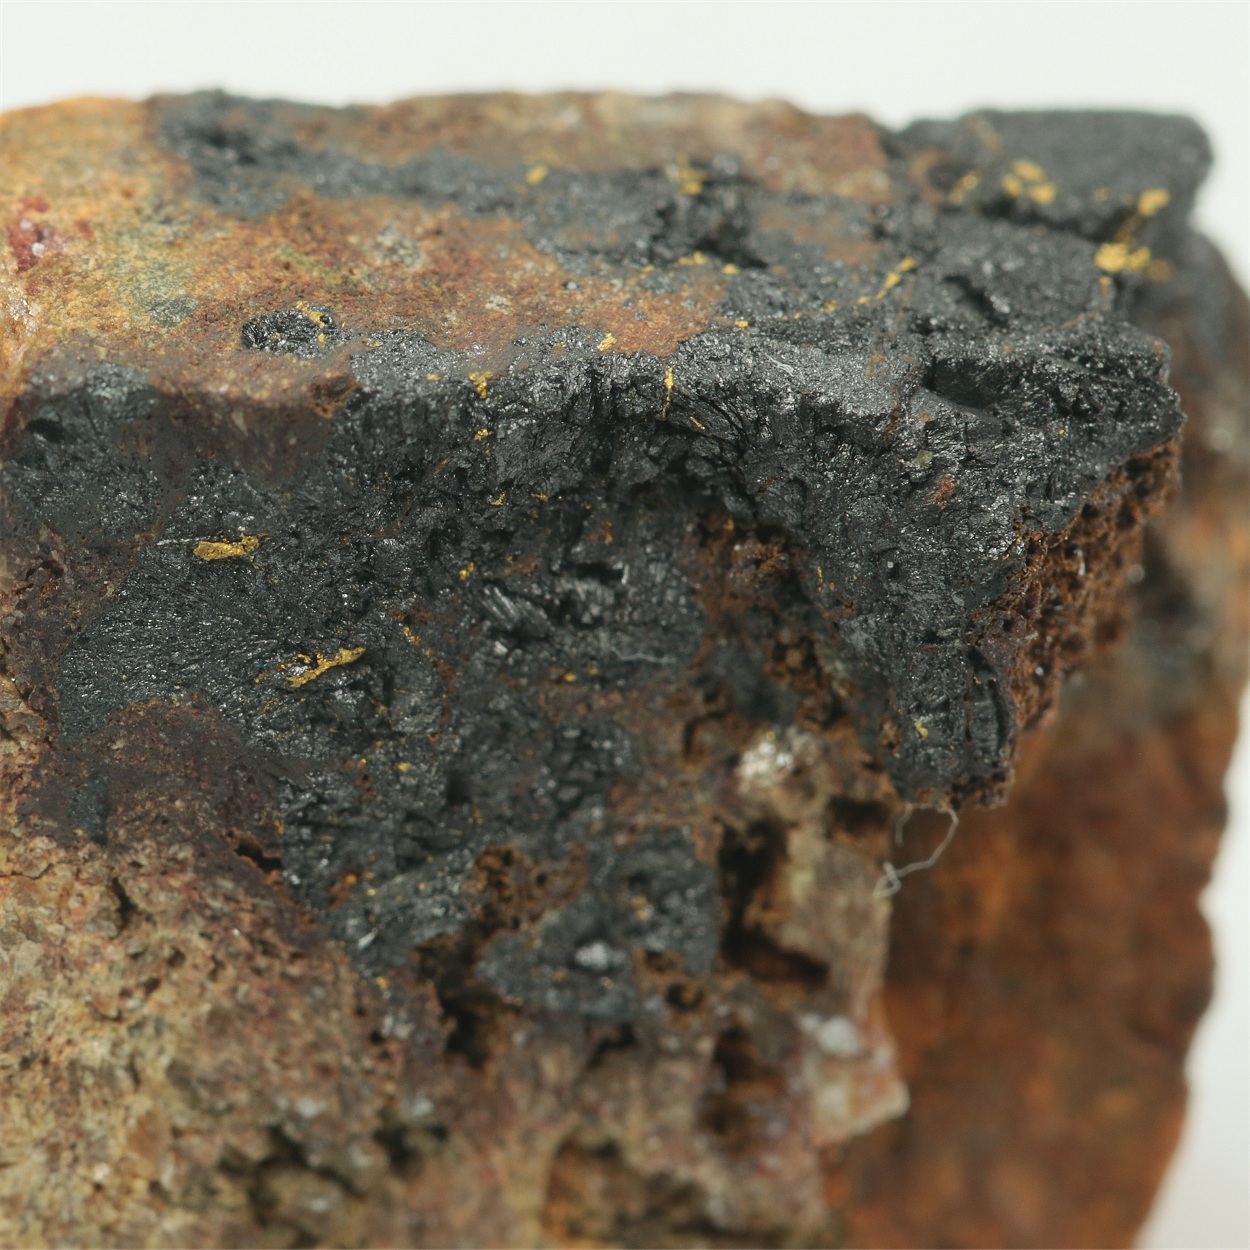 Gold With Uraninite